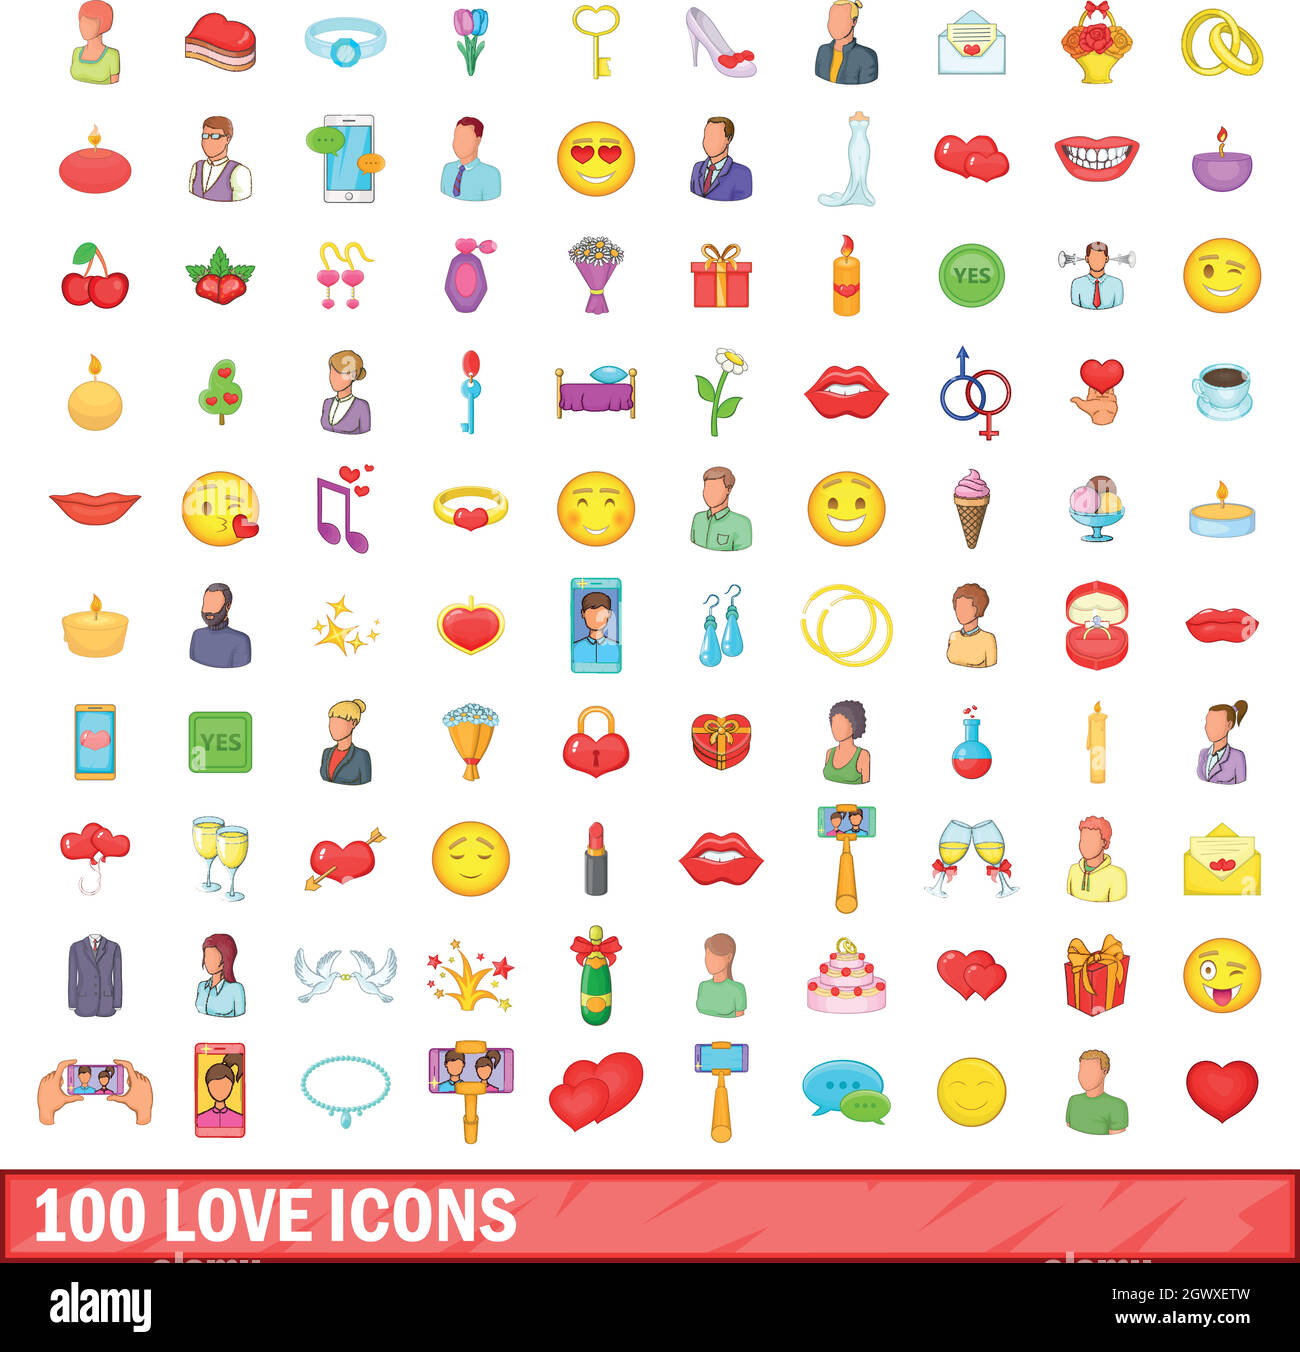 100 amore set di icone, stile cartoon Illustrazione Vettoriale